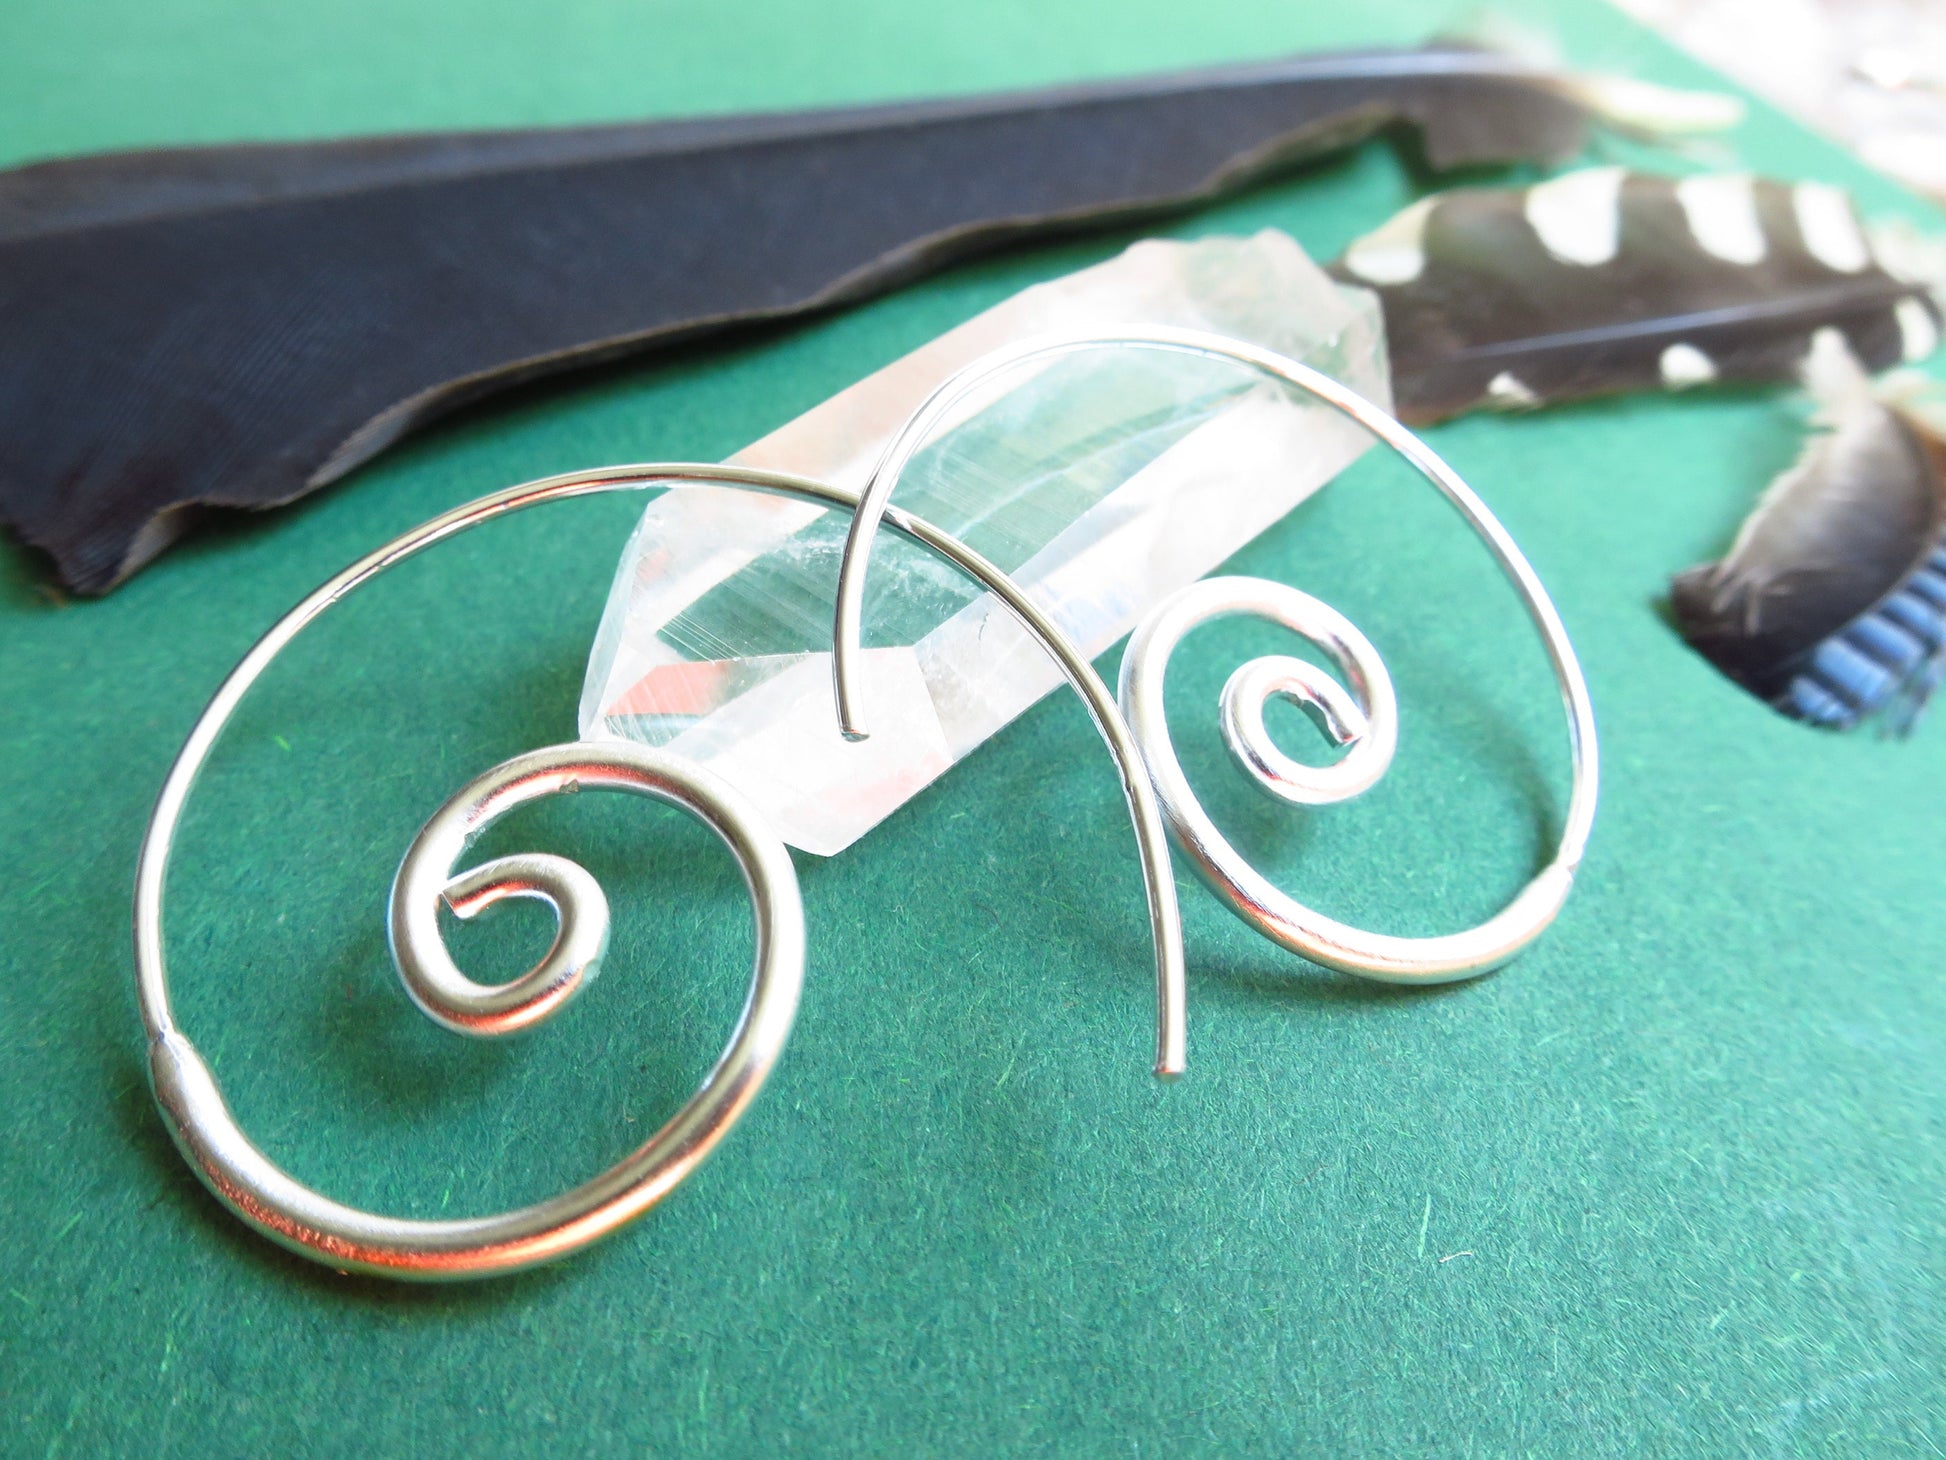 Tribal Bali Spiral sterling silver 925 hoops earrings ear studs earrings made of 925 Sterling silver Creolen Twist loops